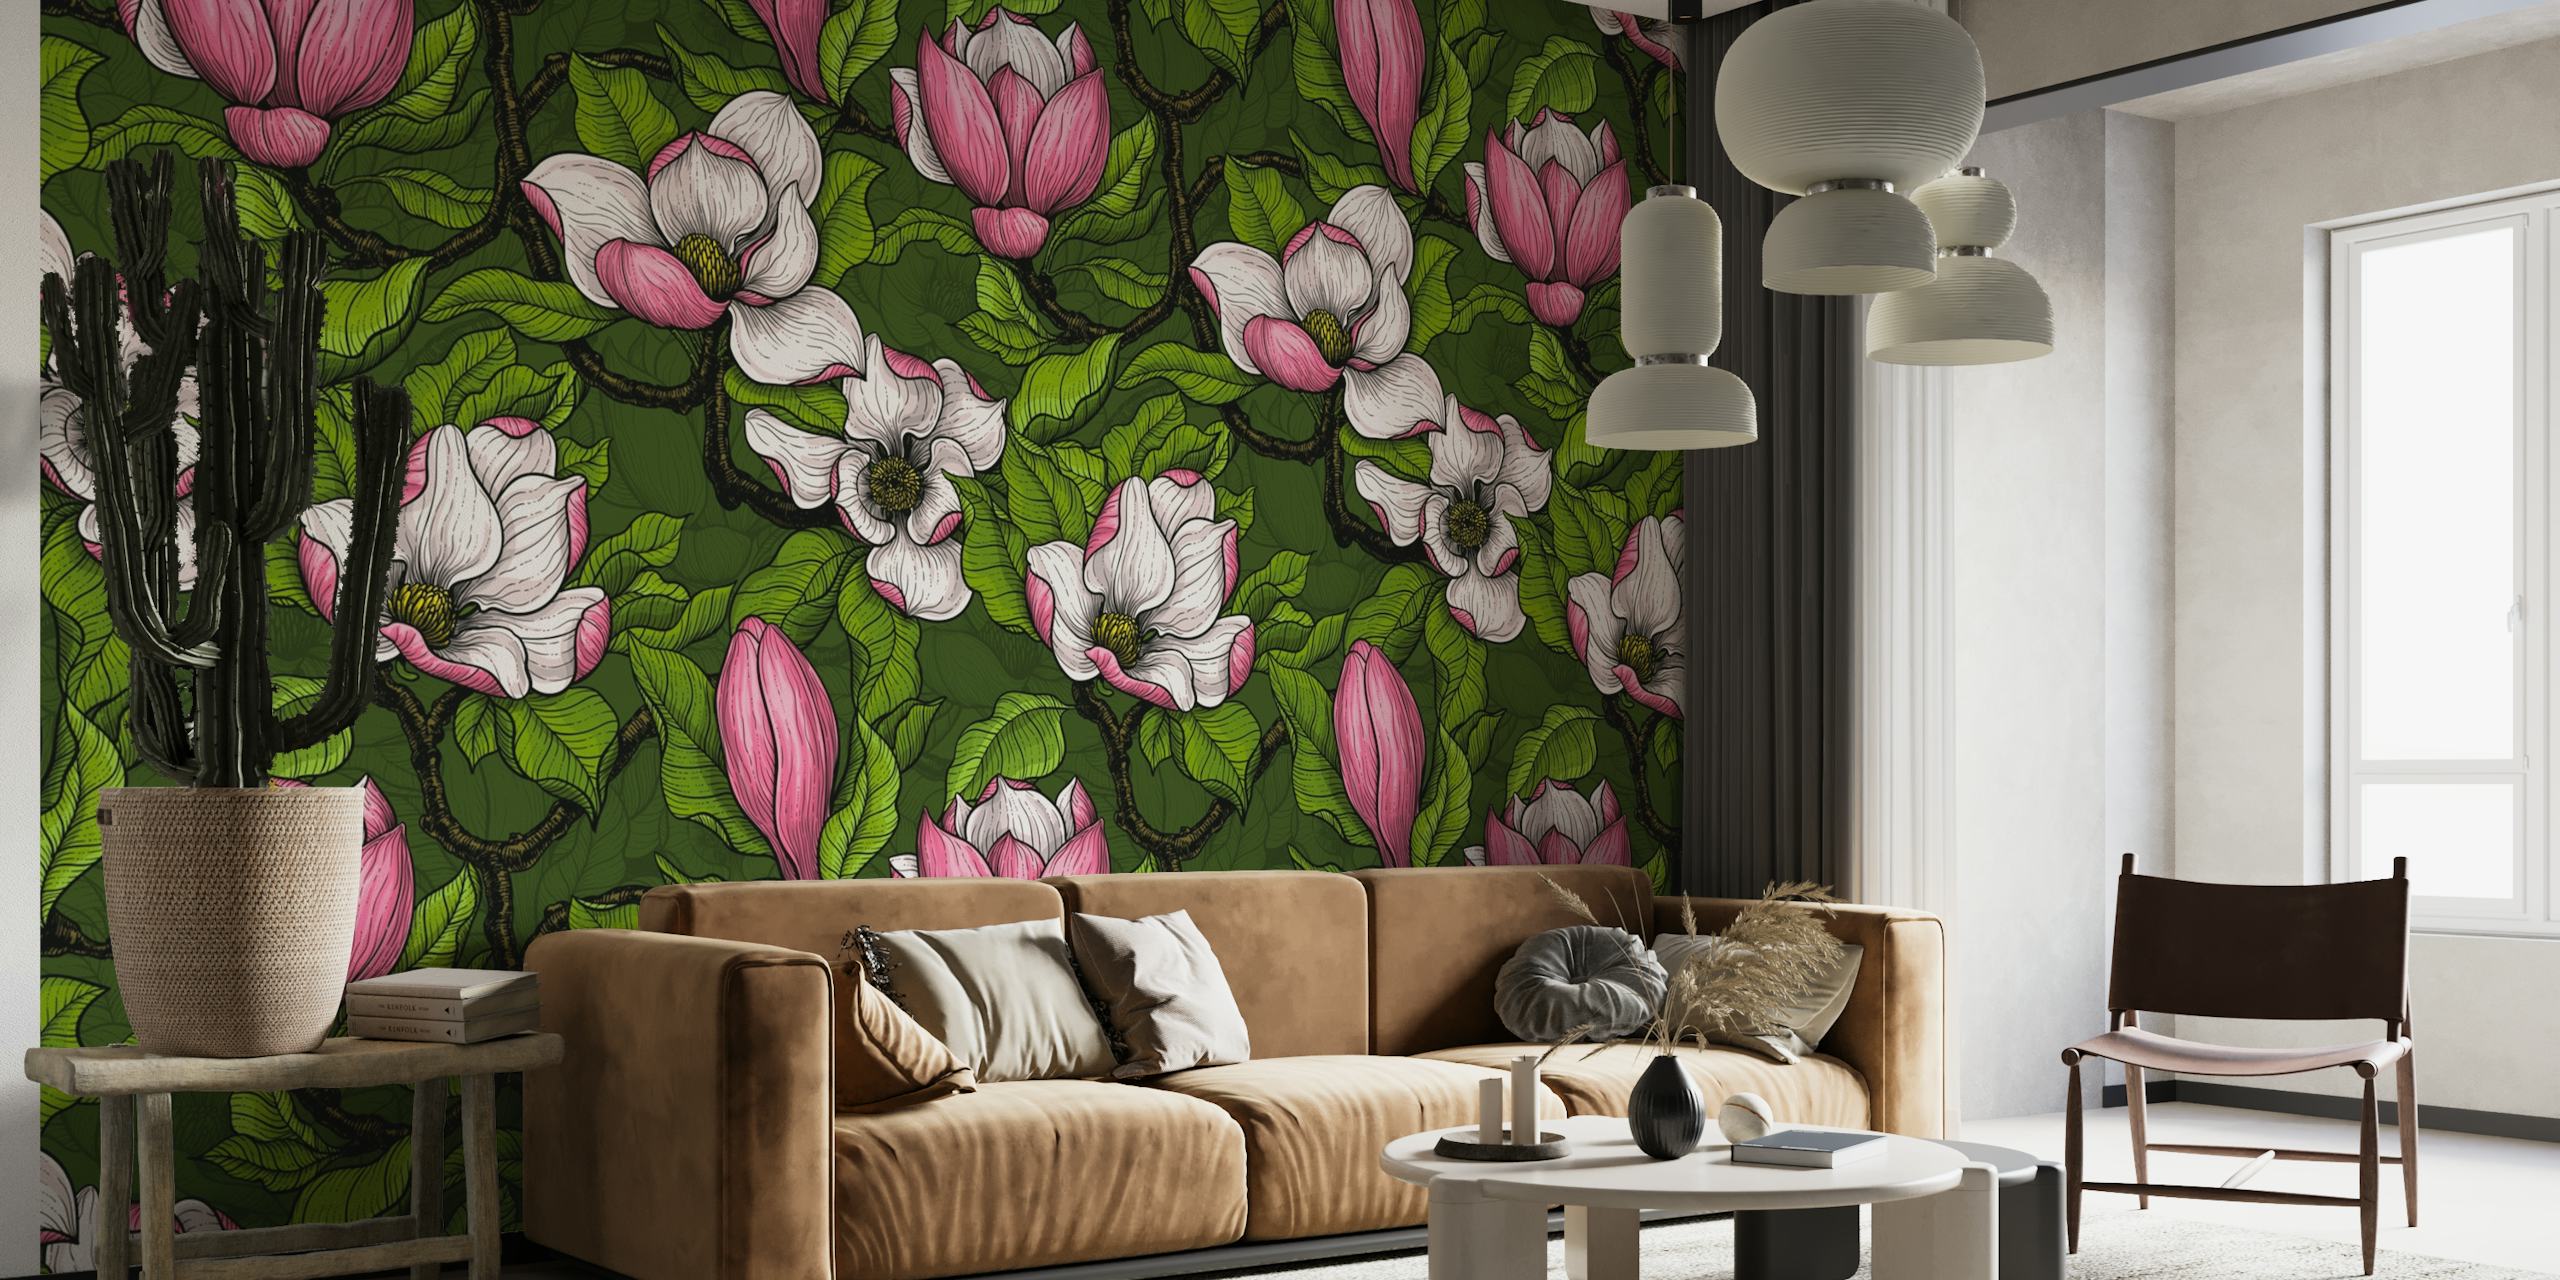 Blooming magnolia 2 wallpaper